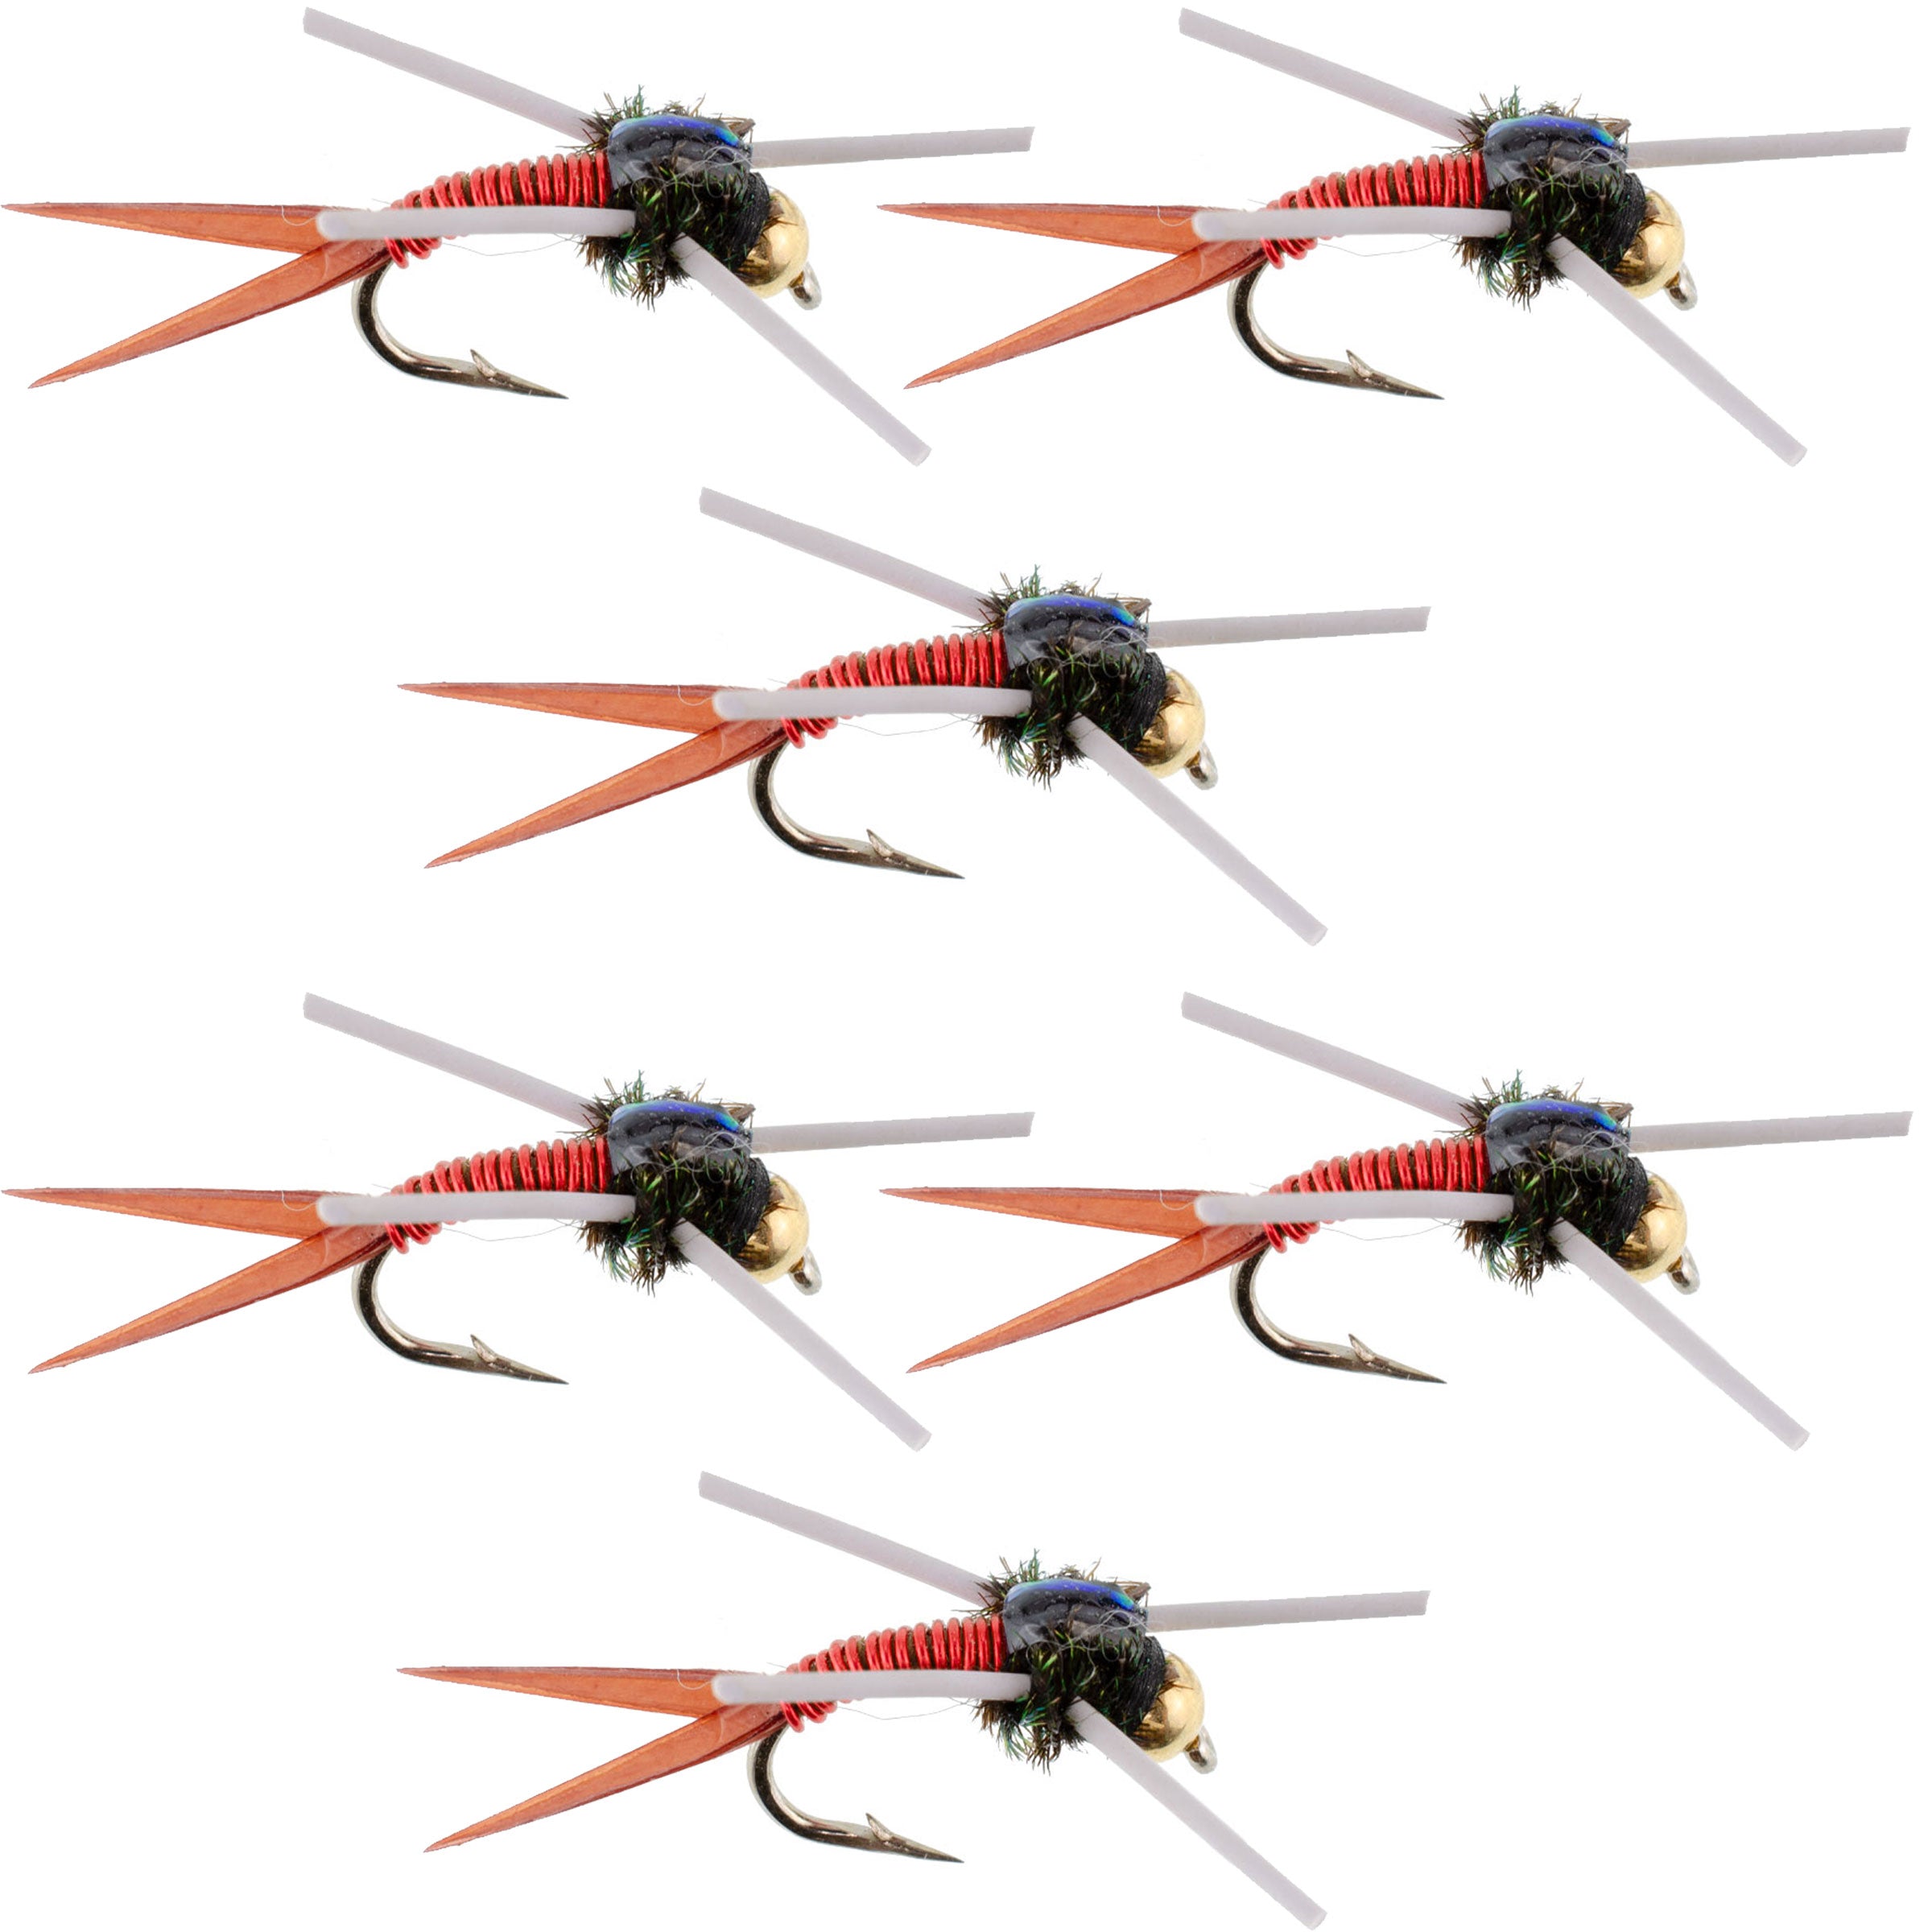 Tungsten Bead Head Rubber Legs Red Copper John Nymph Fly Fishing Flies - Set of 6 Flies Hook Size 12